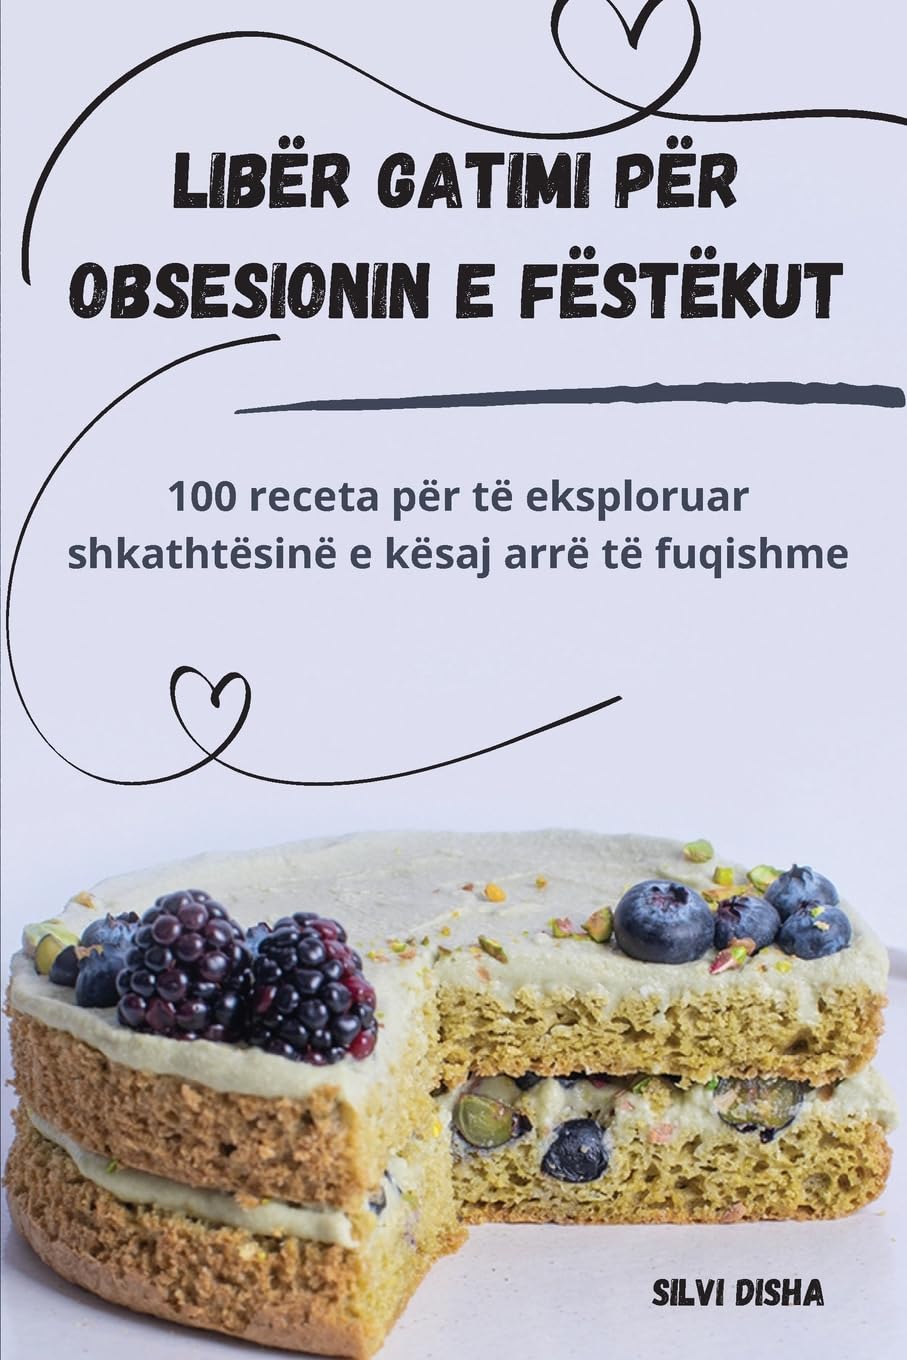 Libër gatimi për obsesionin e fëstëkut (Albanian Edition)